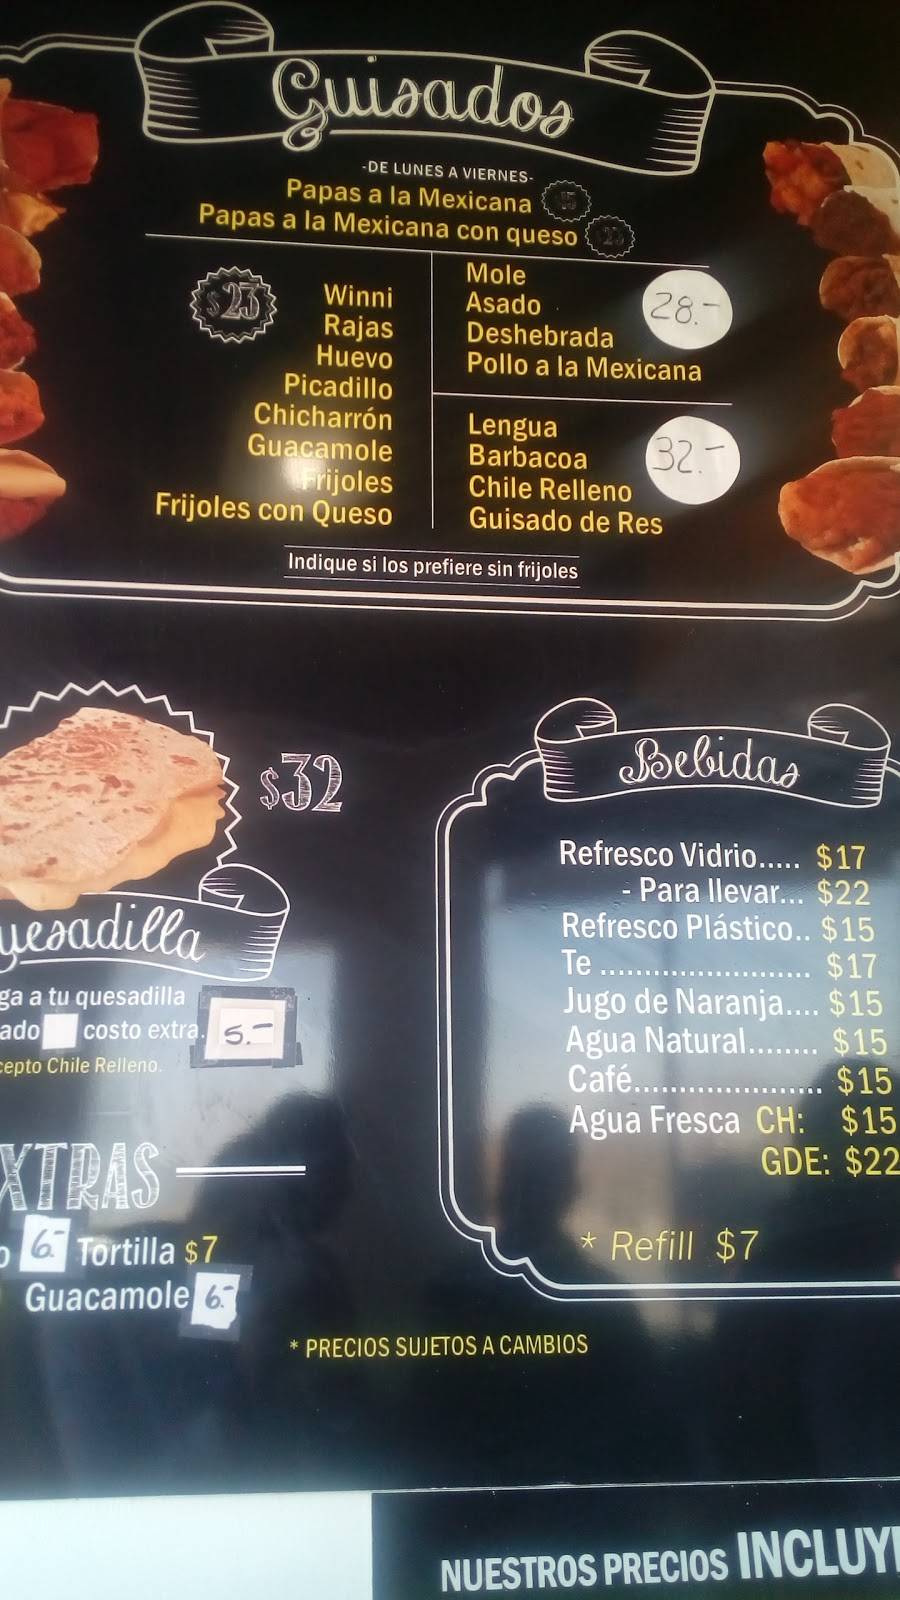 Crisóstomo Burritos y Quesadillas | Plaza Sendero, Av. Francisco Villarreal Torre 2050, Int. A, Valle del Sol, Cd Juárez, Chih., Mexico | Phone: 656 643 8482